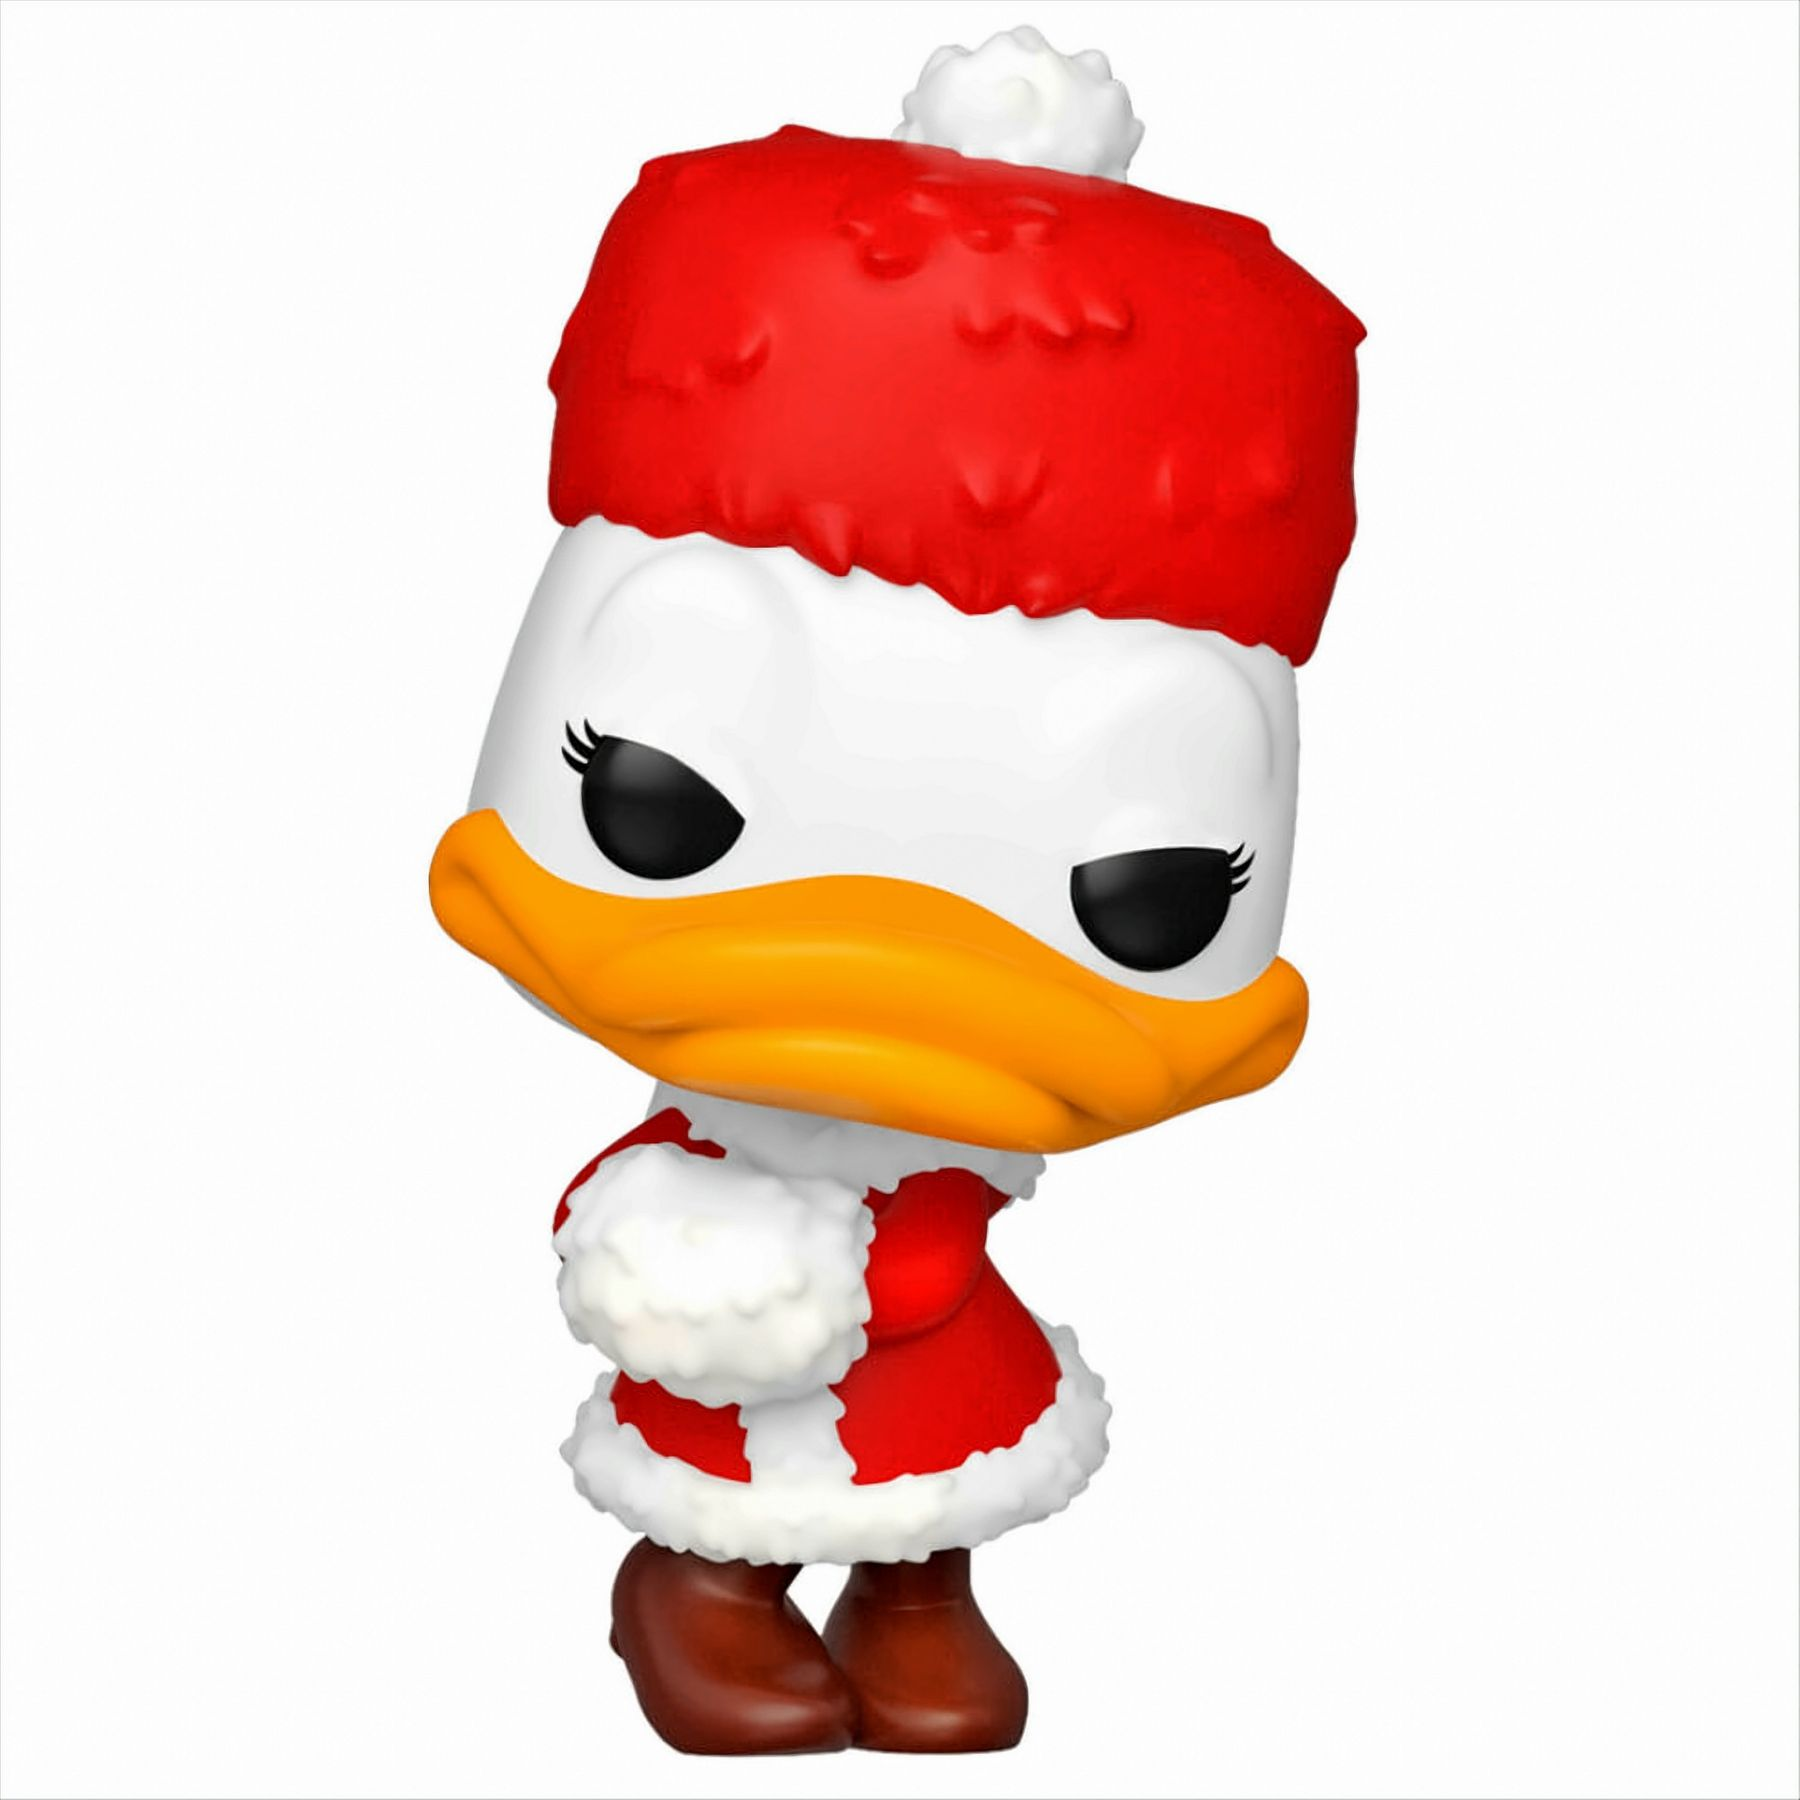 - - Duck Daisy Holiday/Weihnachten POP Disney